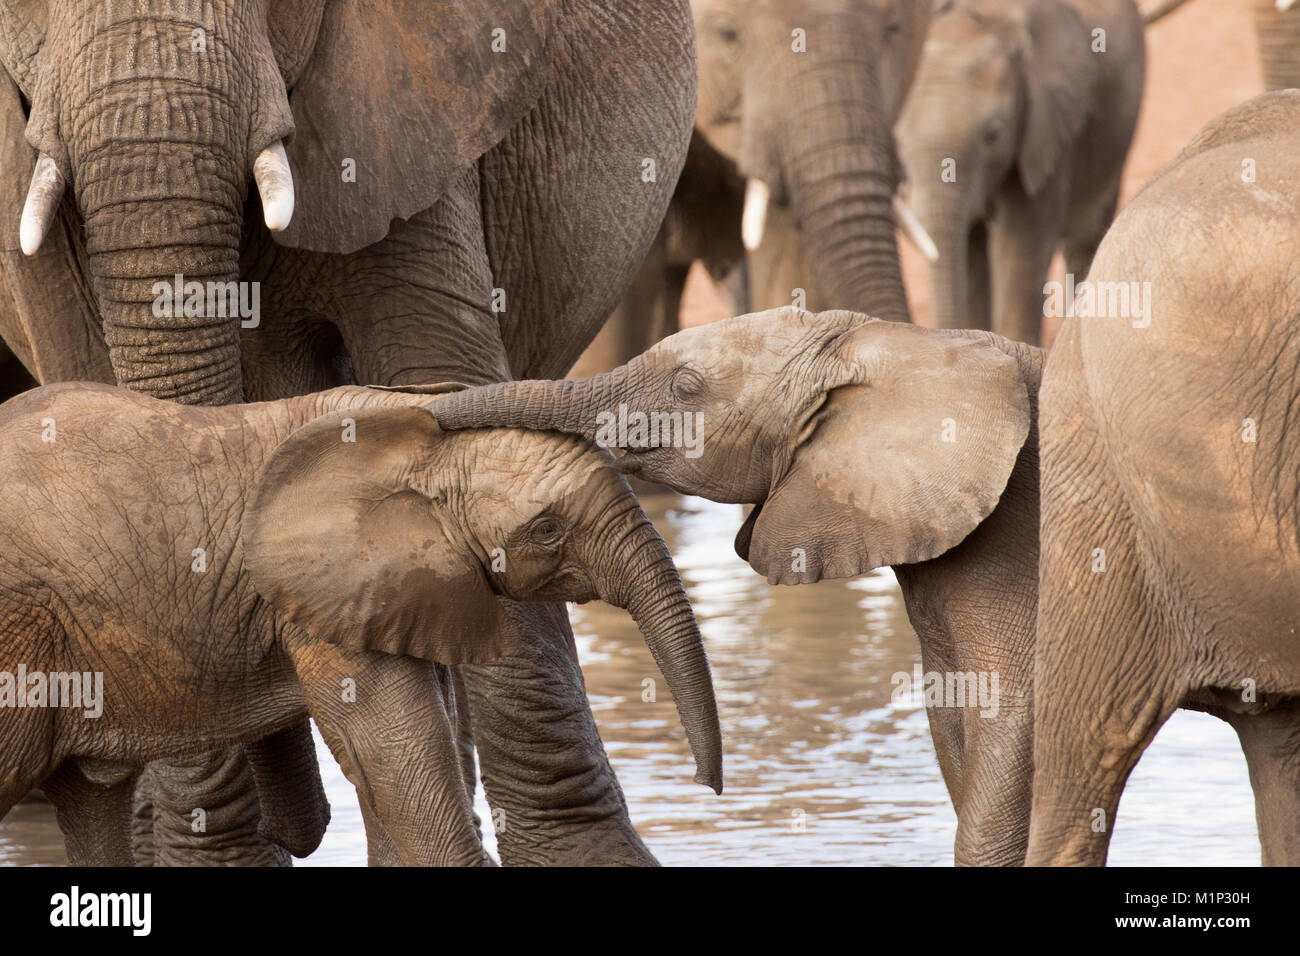 Groupe d'éléphants africains avec bébé (Loxodonta africana), le Parc National du Serengeti, Tanzanie, Afrique orientale, Afrique du Sud Banque D'Images